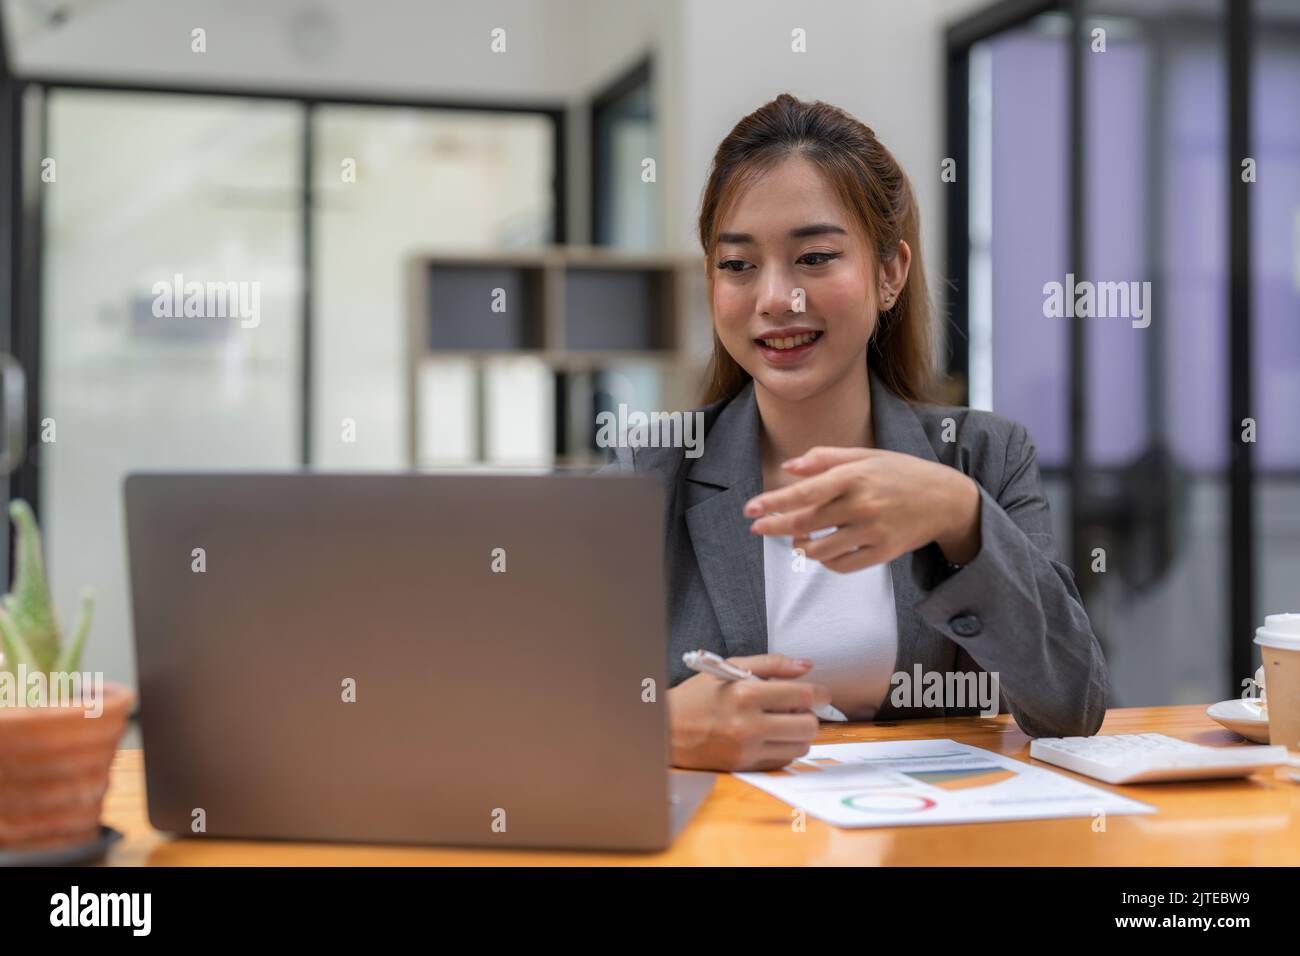 Portrait d'une femme asiatique souriante indépendante au travail en utilisant un projet de recherche sur ordinateur portable. Positif motivé jeune noire dame étudiant à distance Banque D'Images